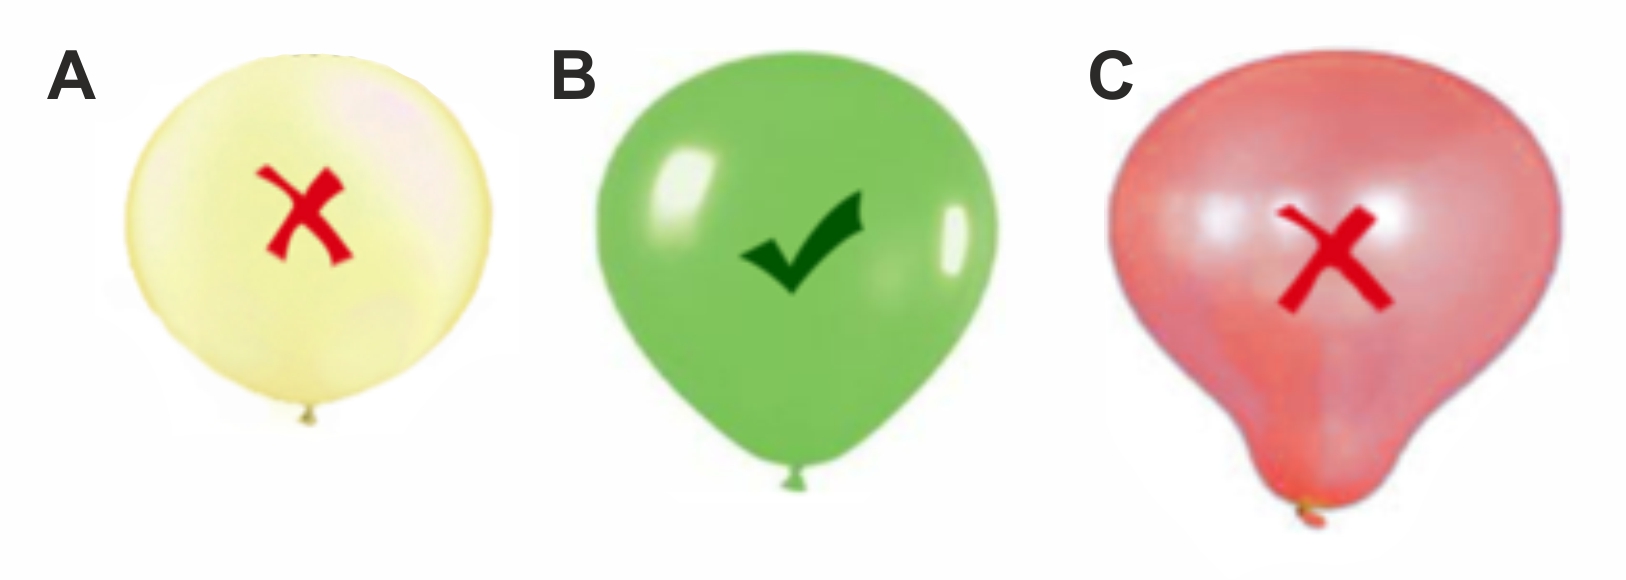 Jak naplnit balónky aby létaly?